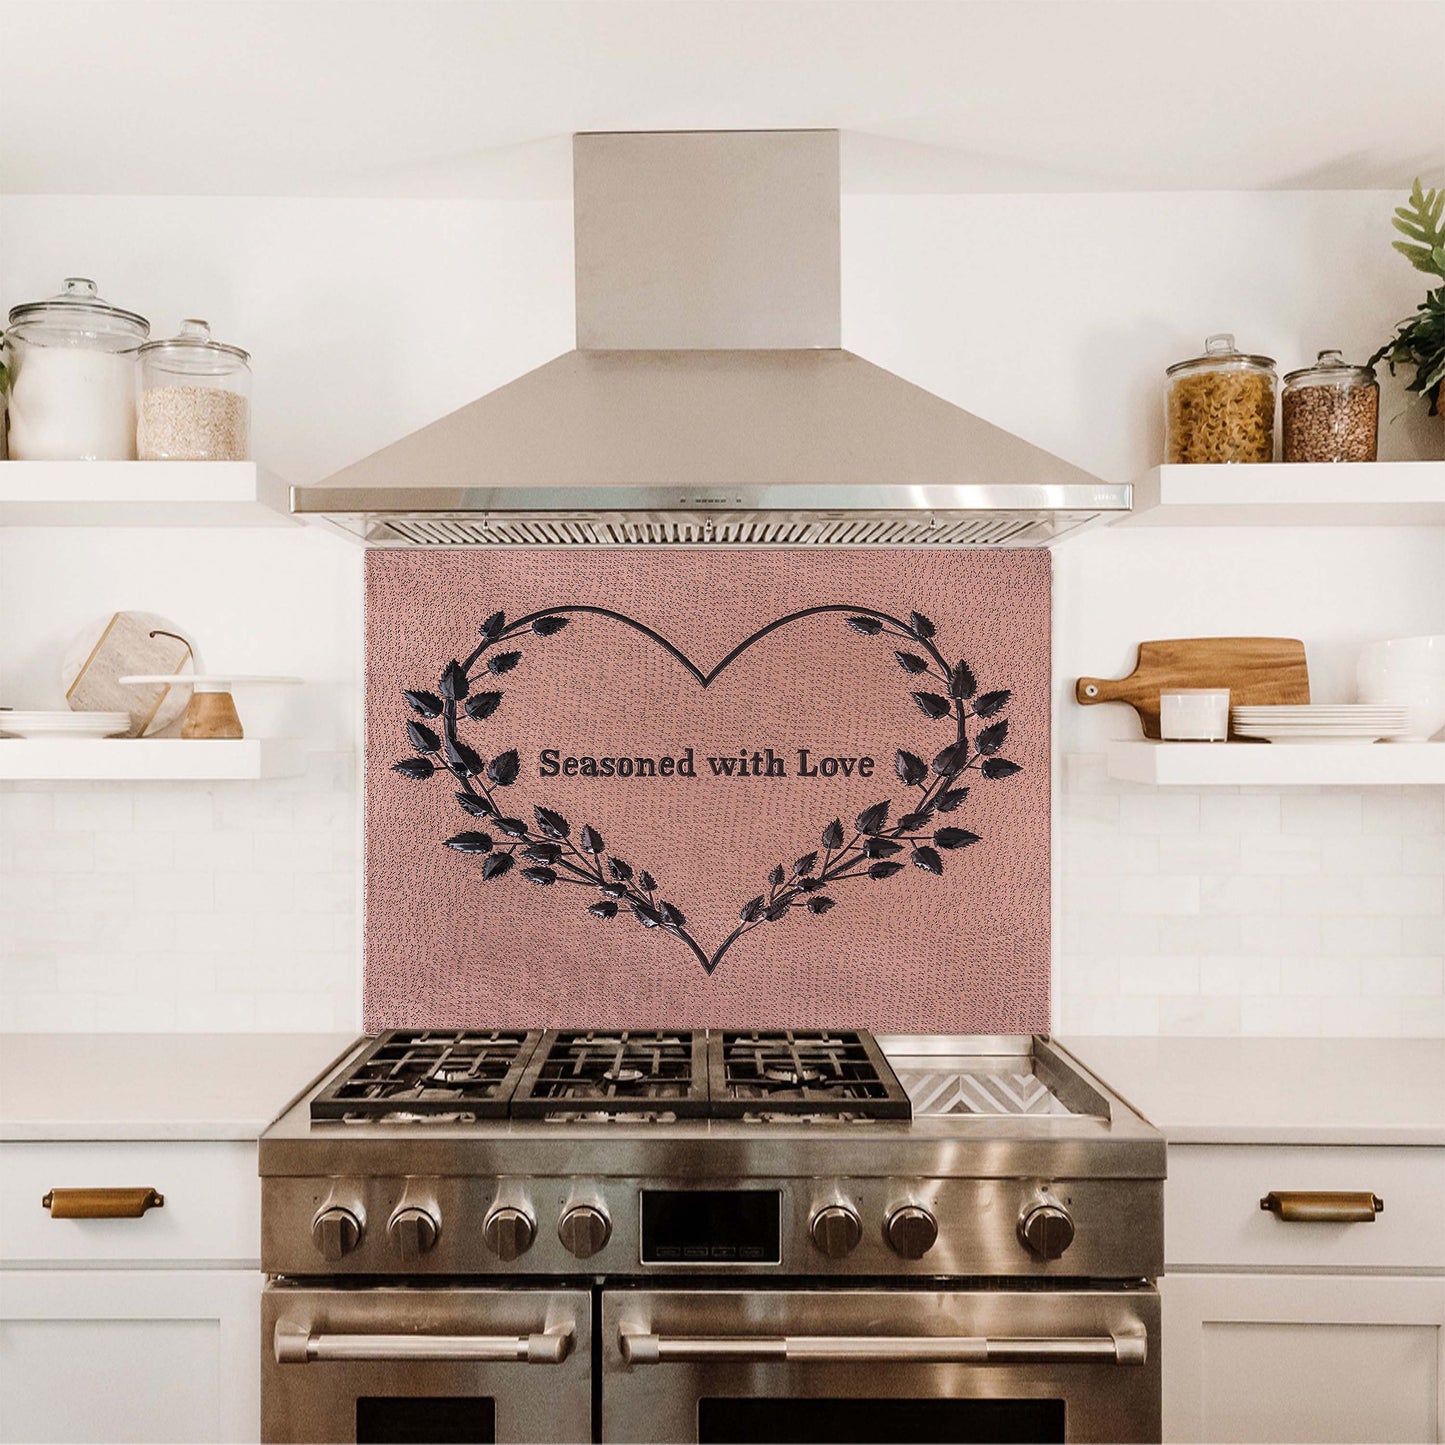 7th Anniversary Gift Kitchen Backsplash Tile